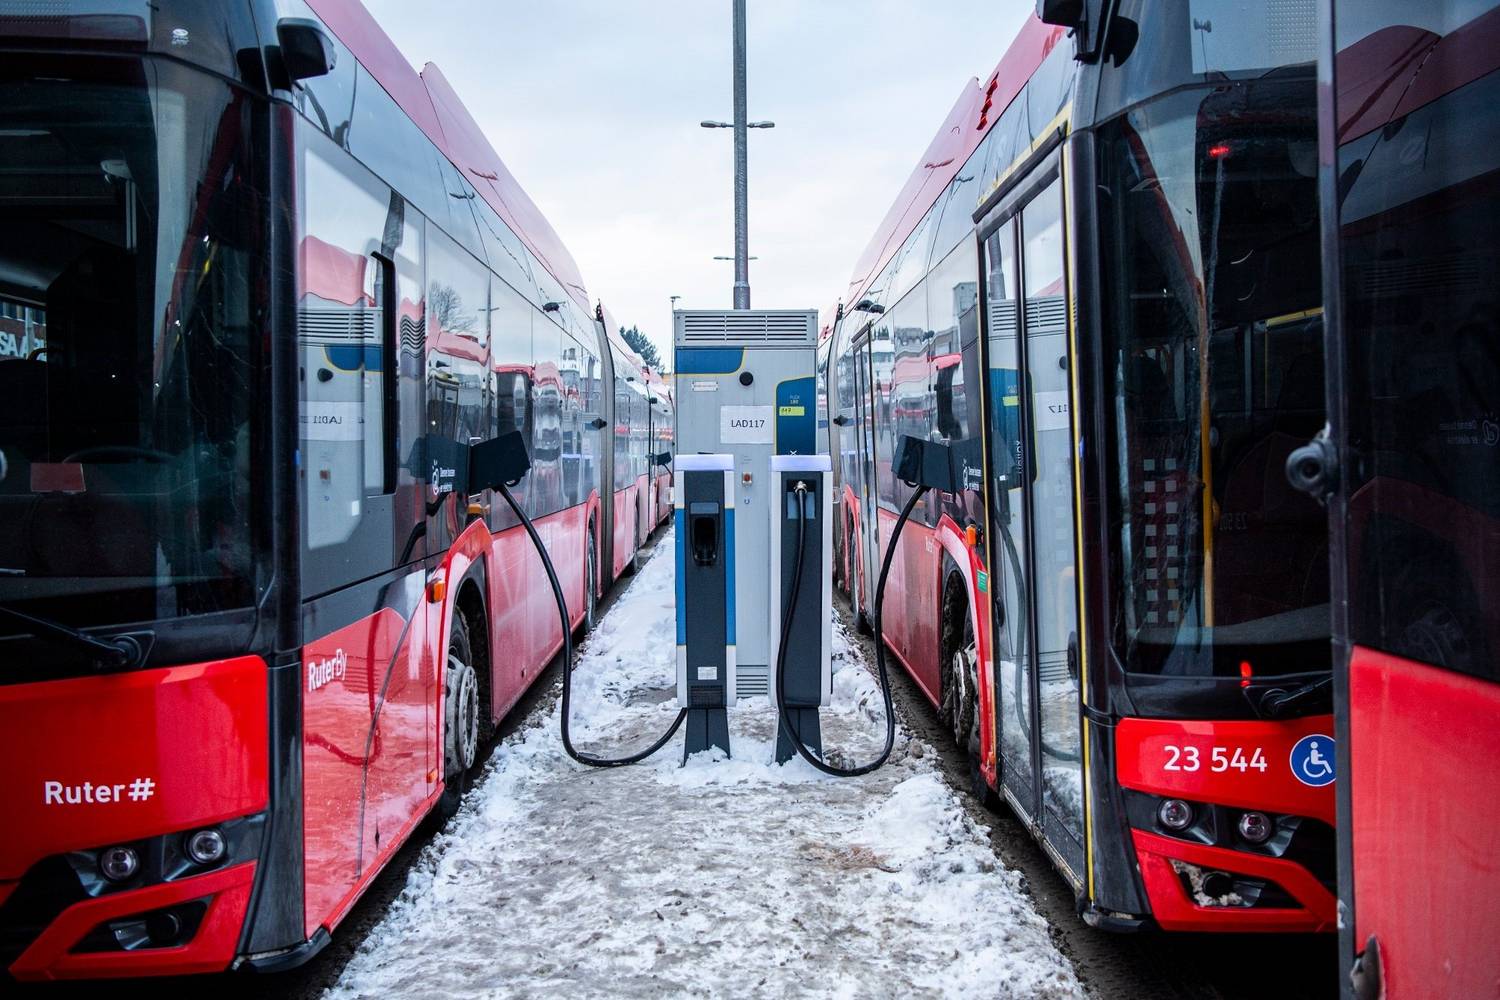 Az elektromos buszok miatt került csőd szélére egy norvég buszüzemeltető